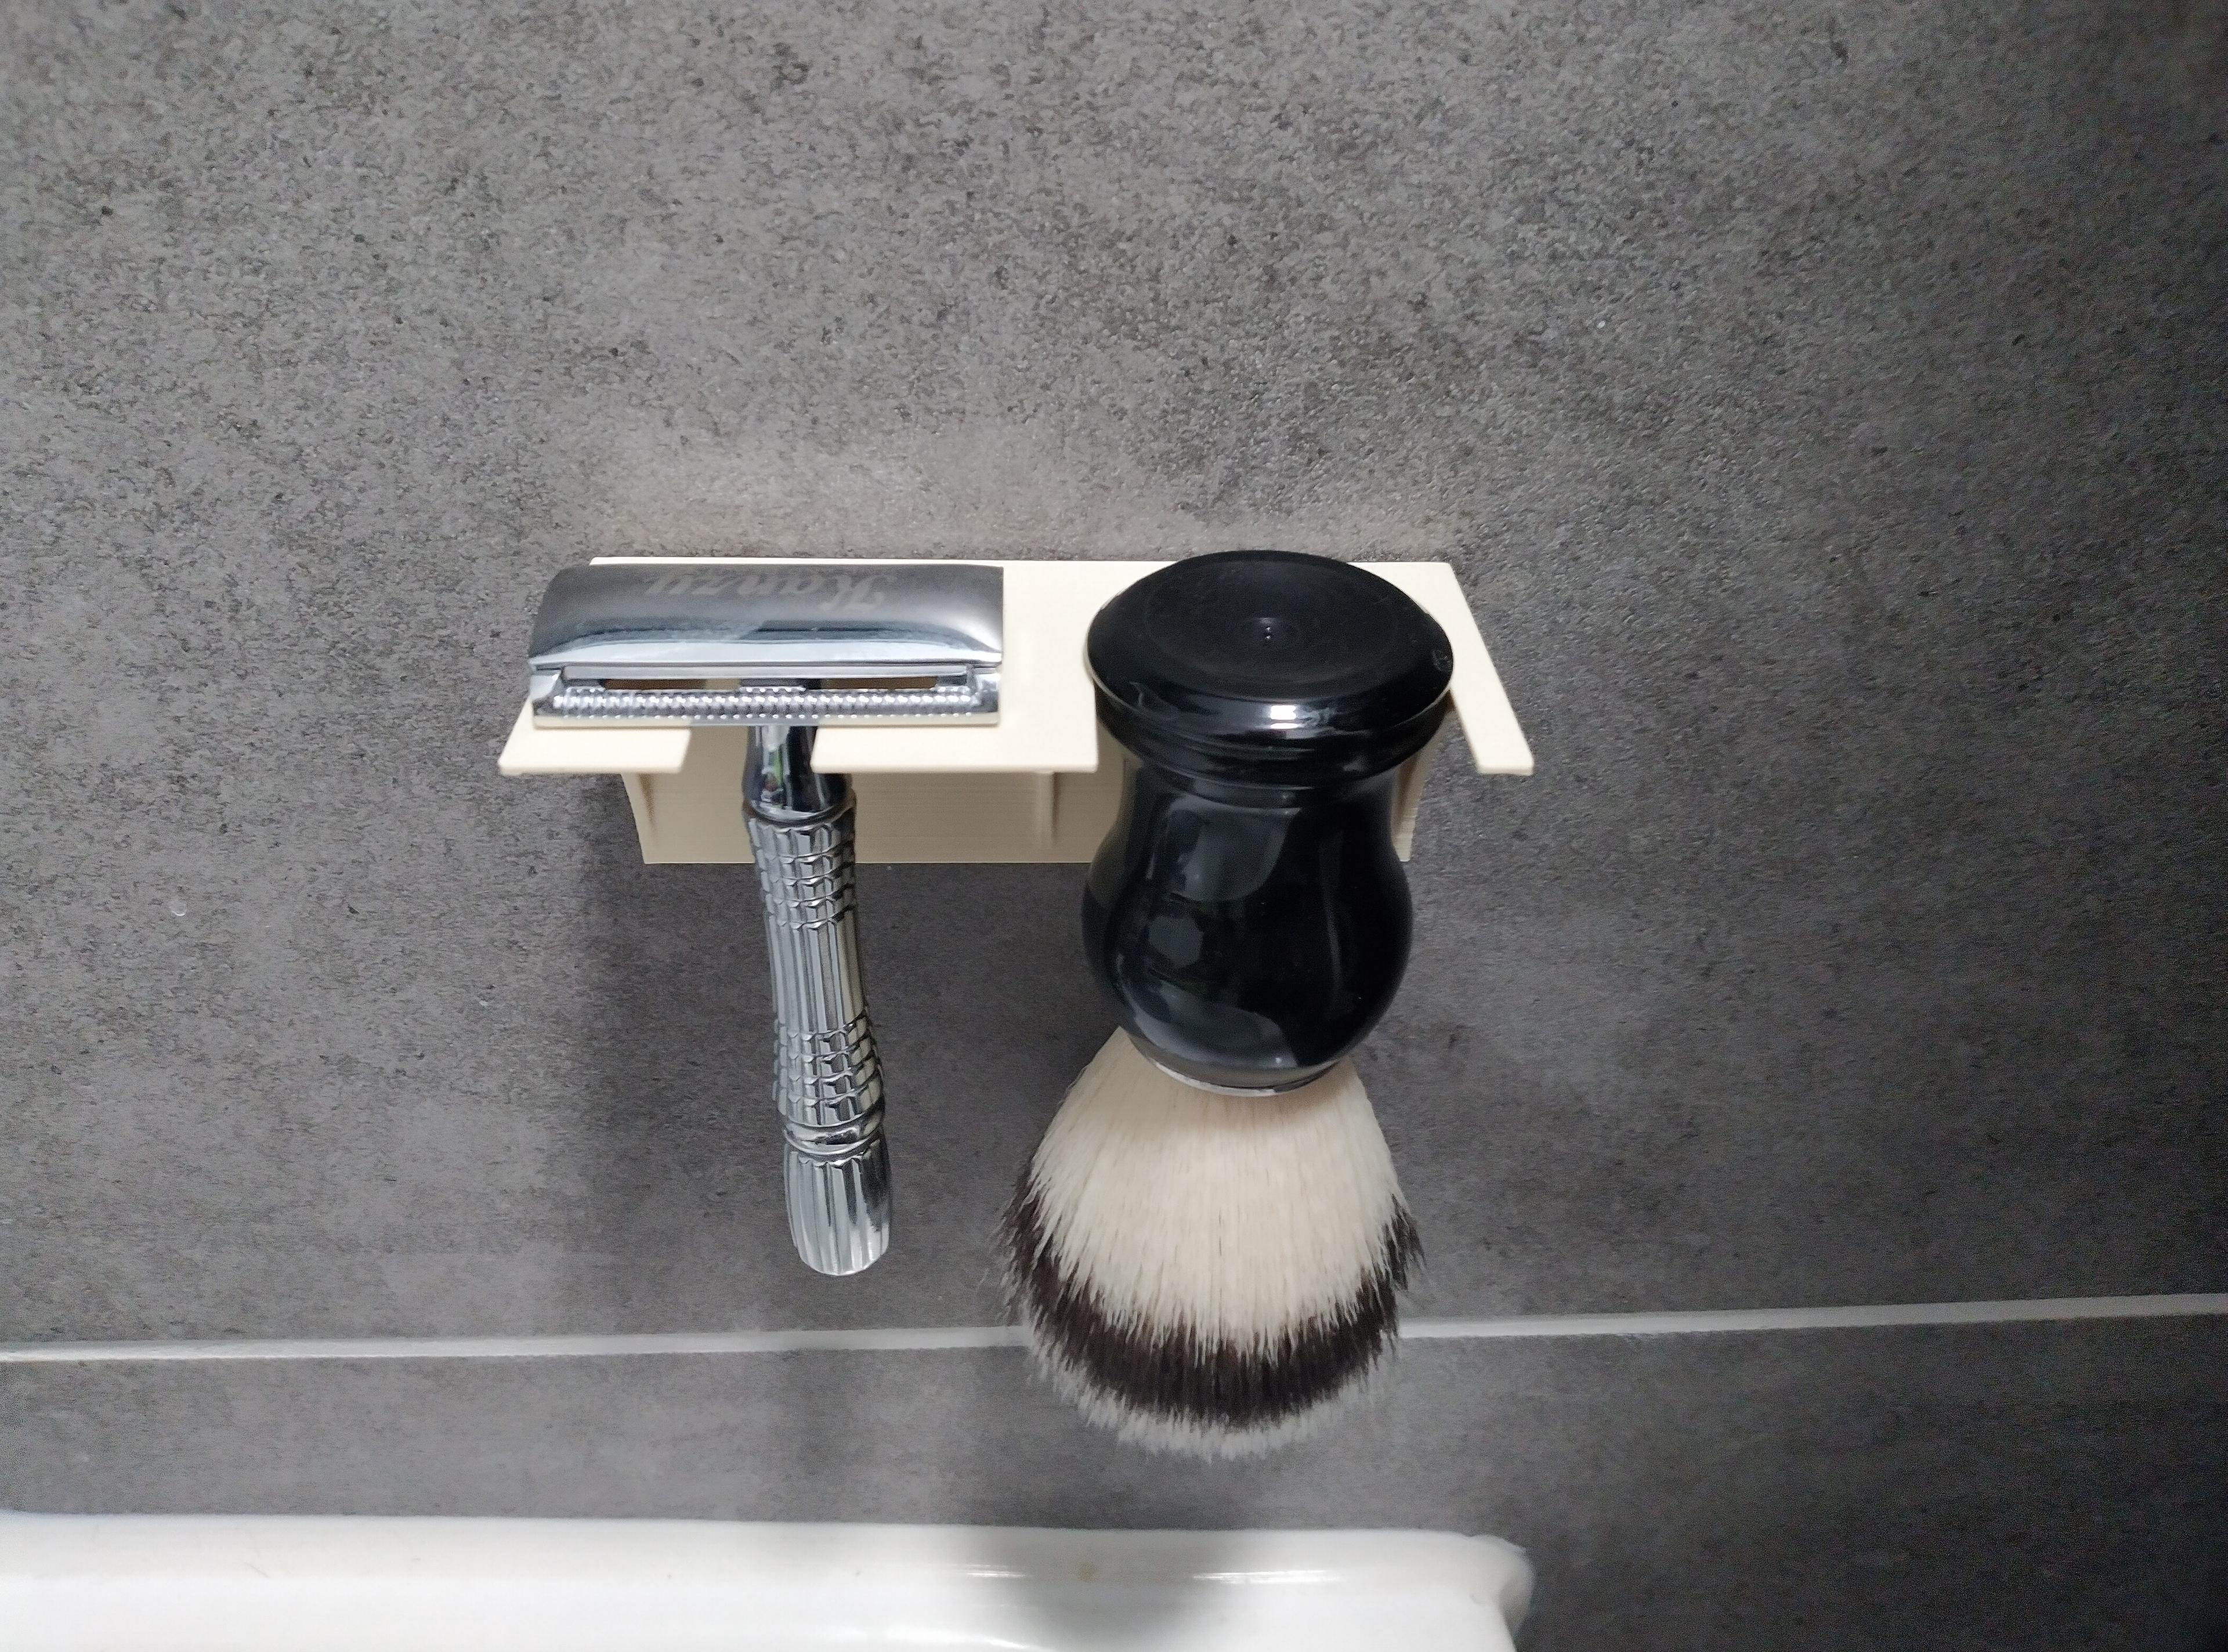 Razor and shaving brush holder - The holder in use - 3d model